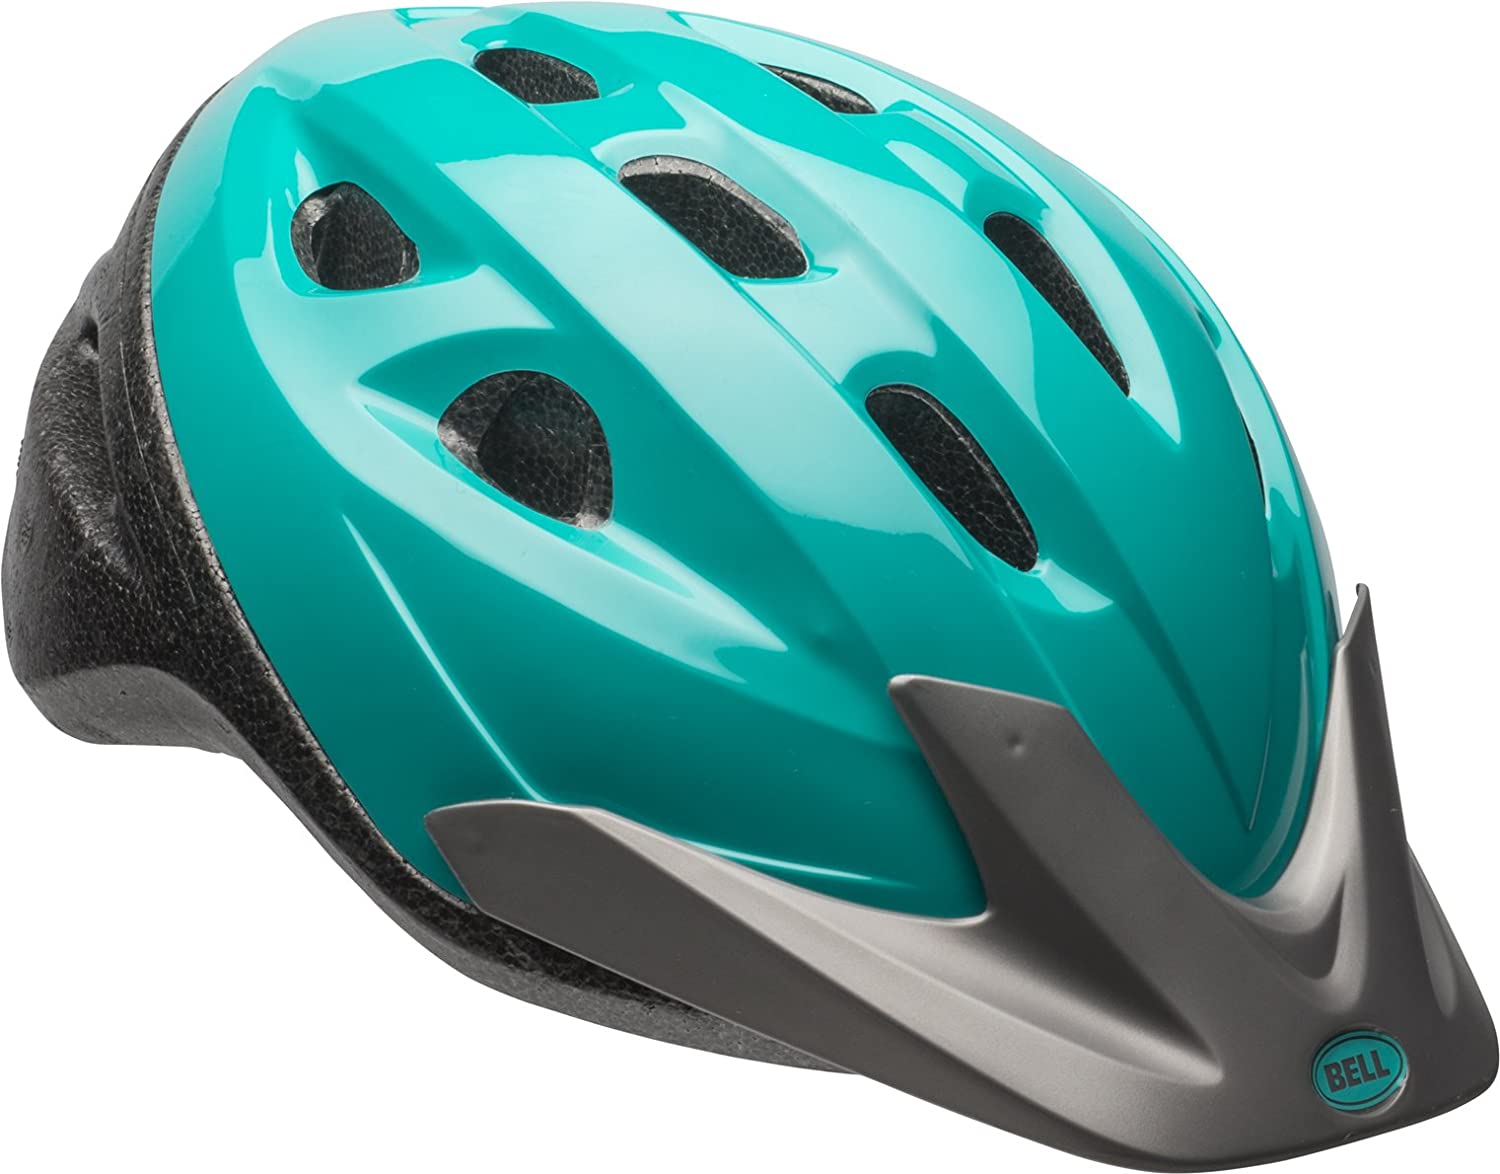 BELL Thalia True-Fit & Pinch-Guard Reflective Adult Bike Helmet